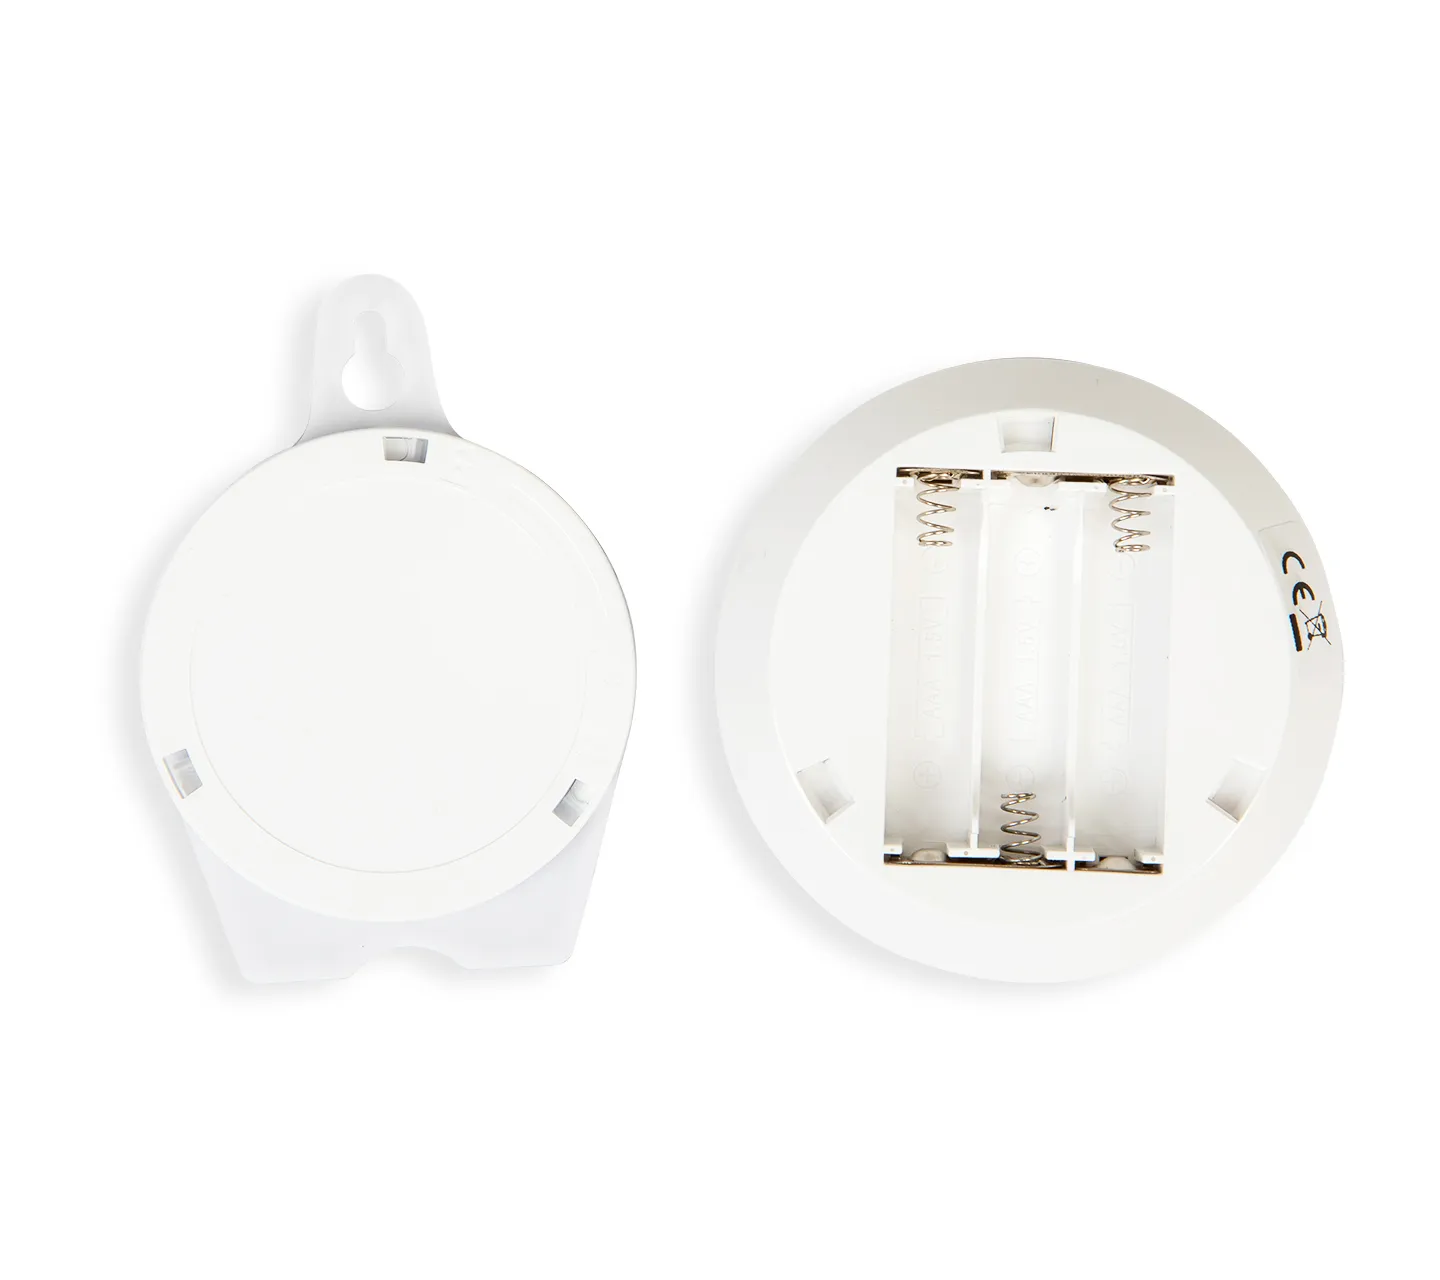 Toilet Light - Motion Sensor LED for Bowl & Seat - Vive Health